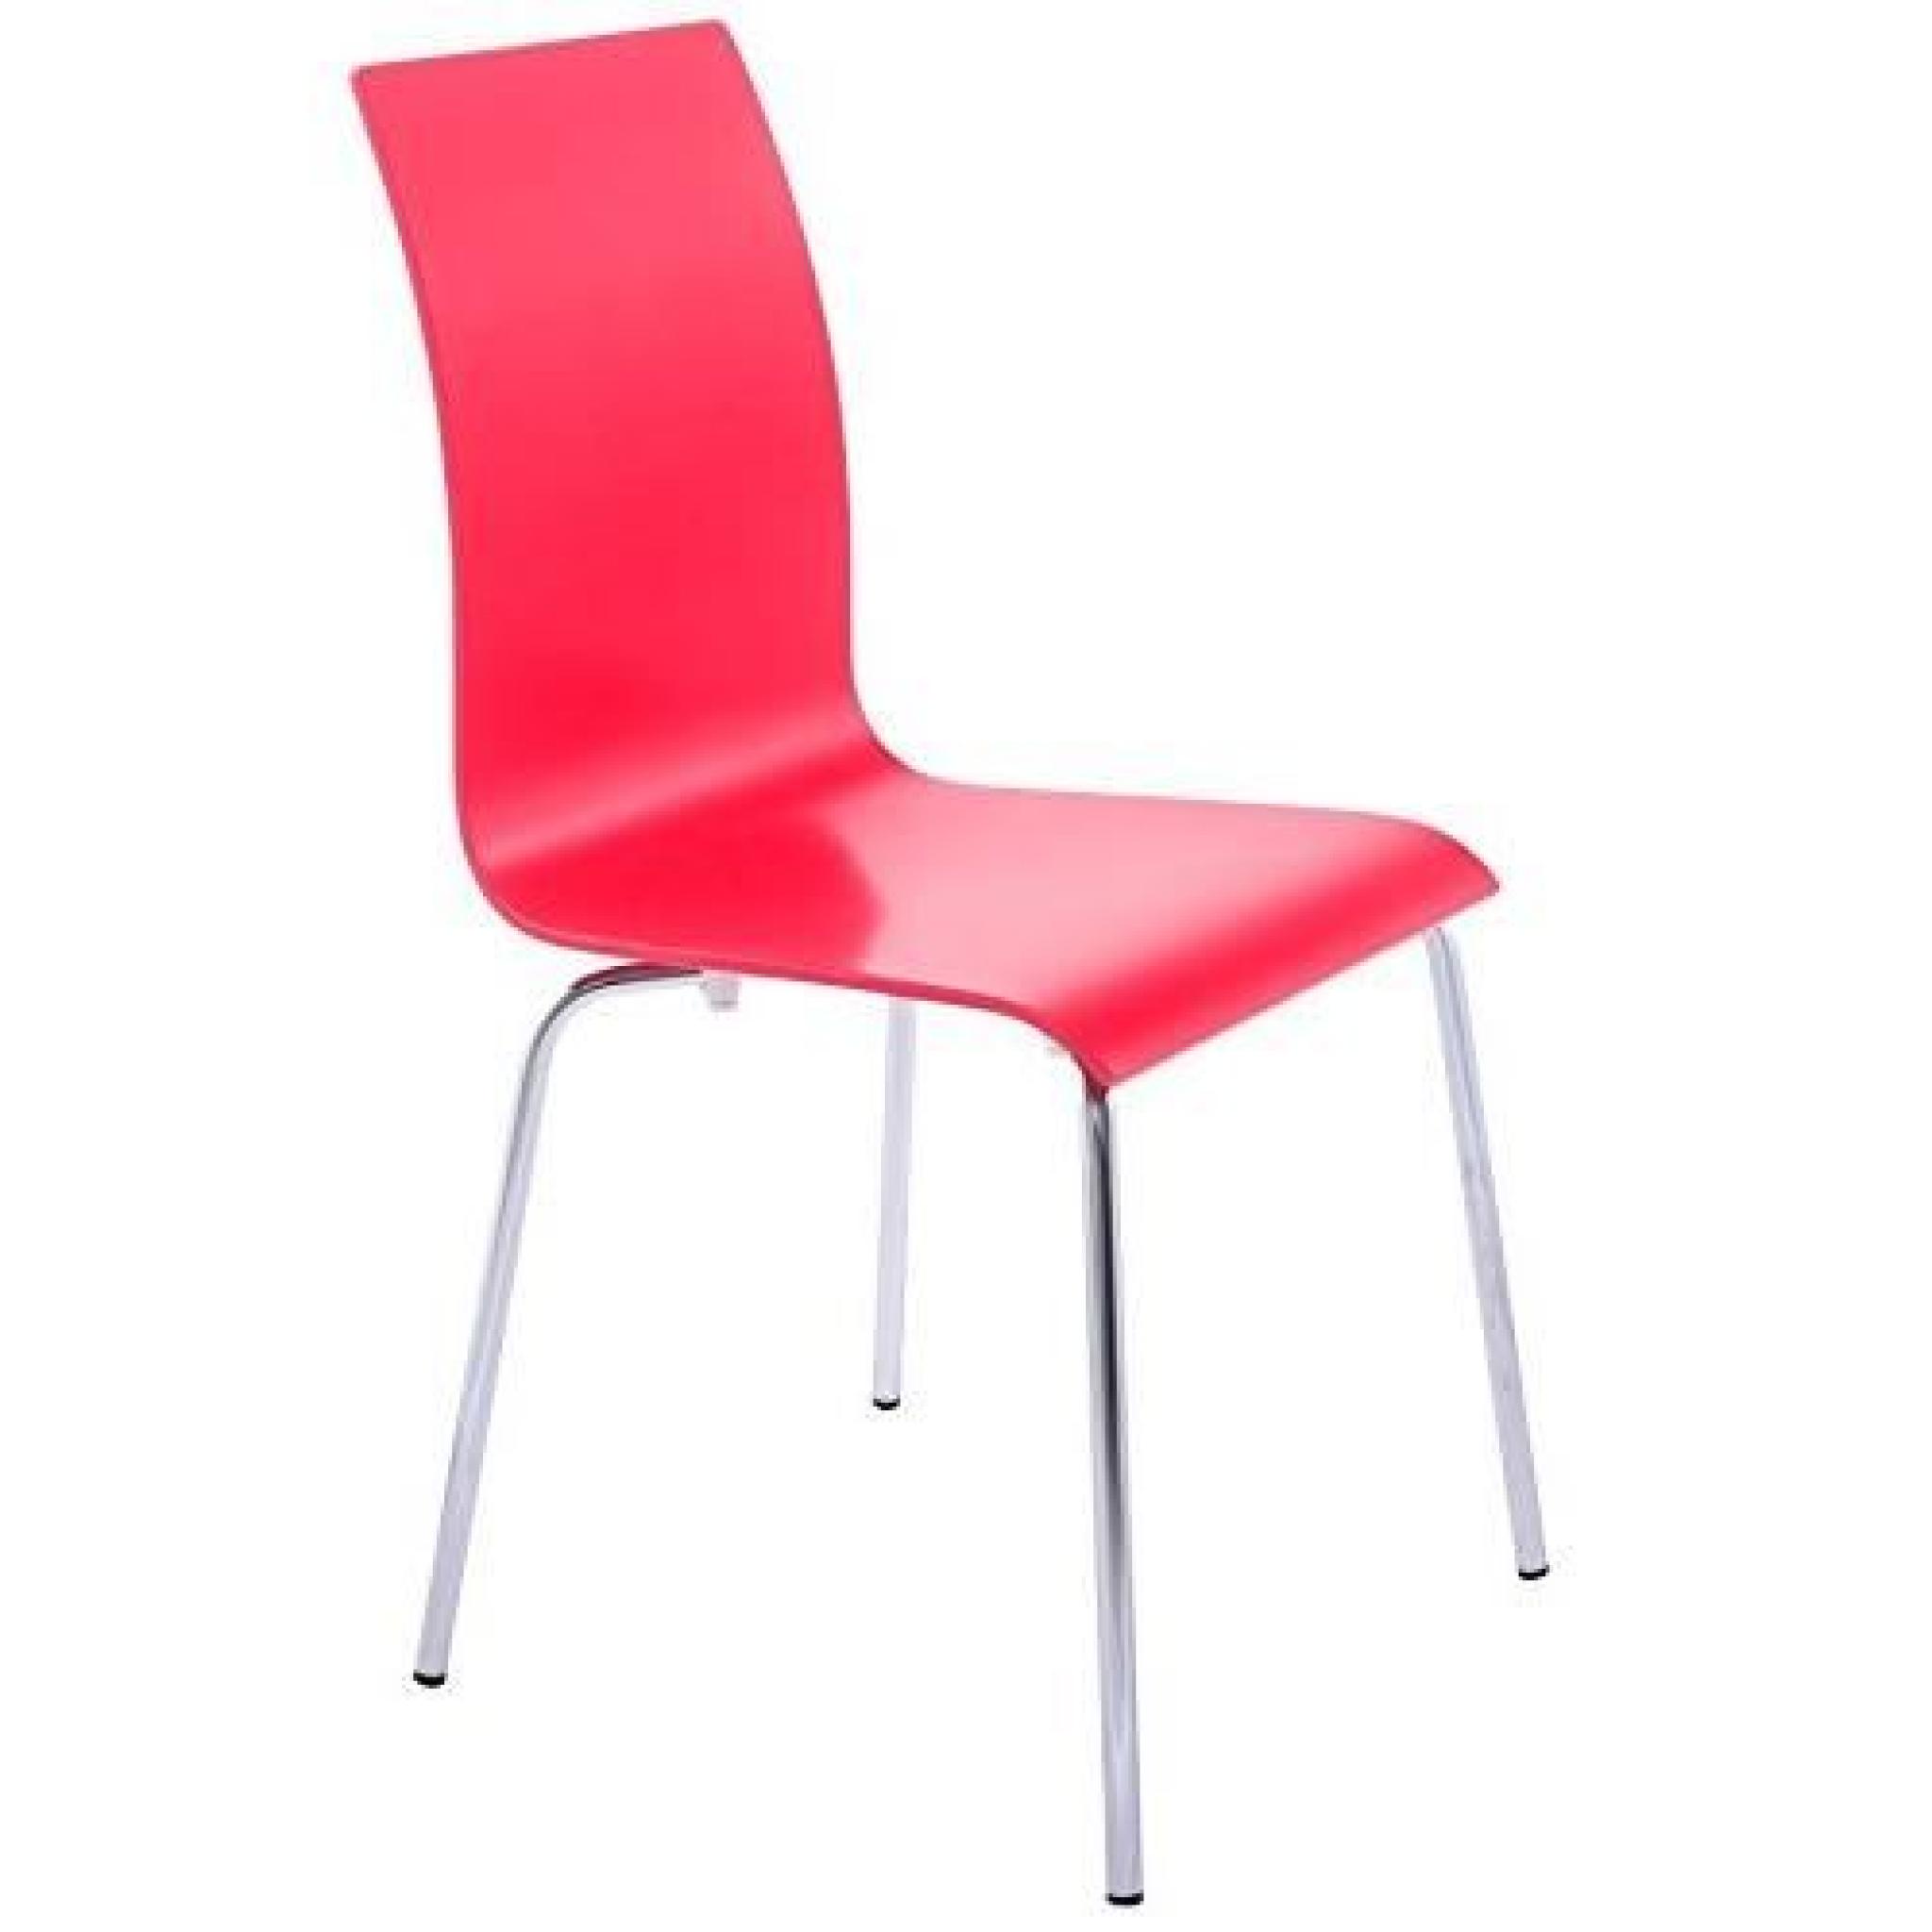 CLASSIC - Chaise de cuisine en bois peint rouge